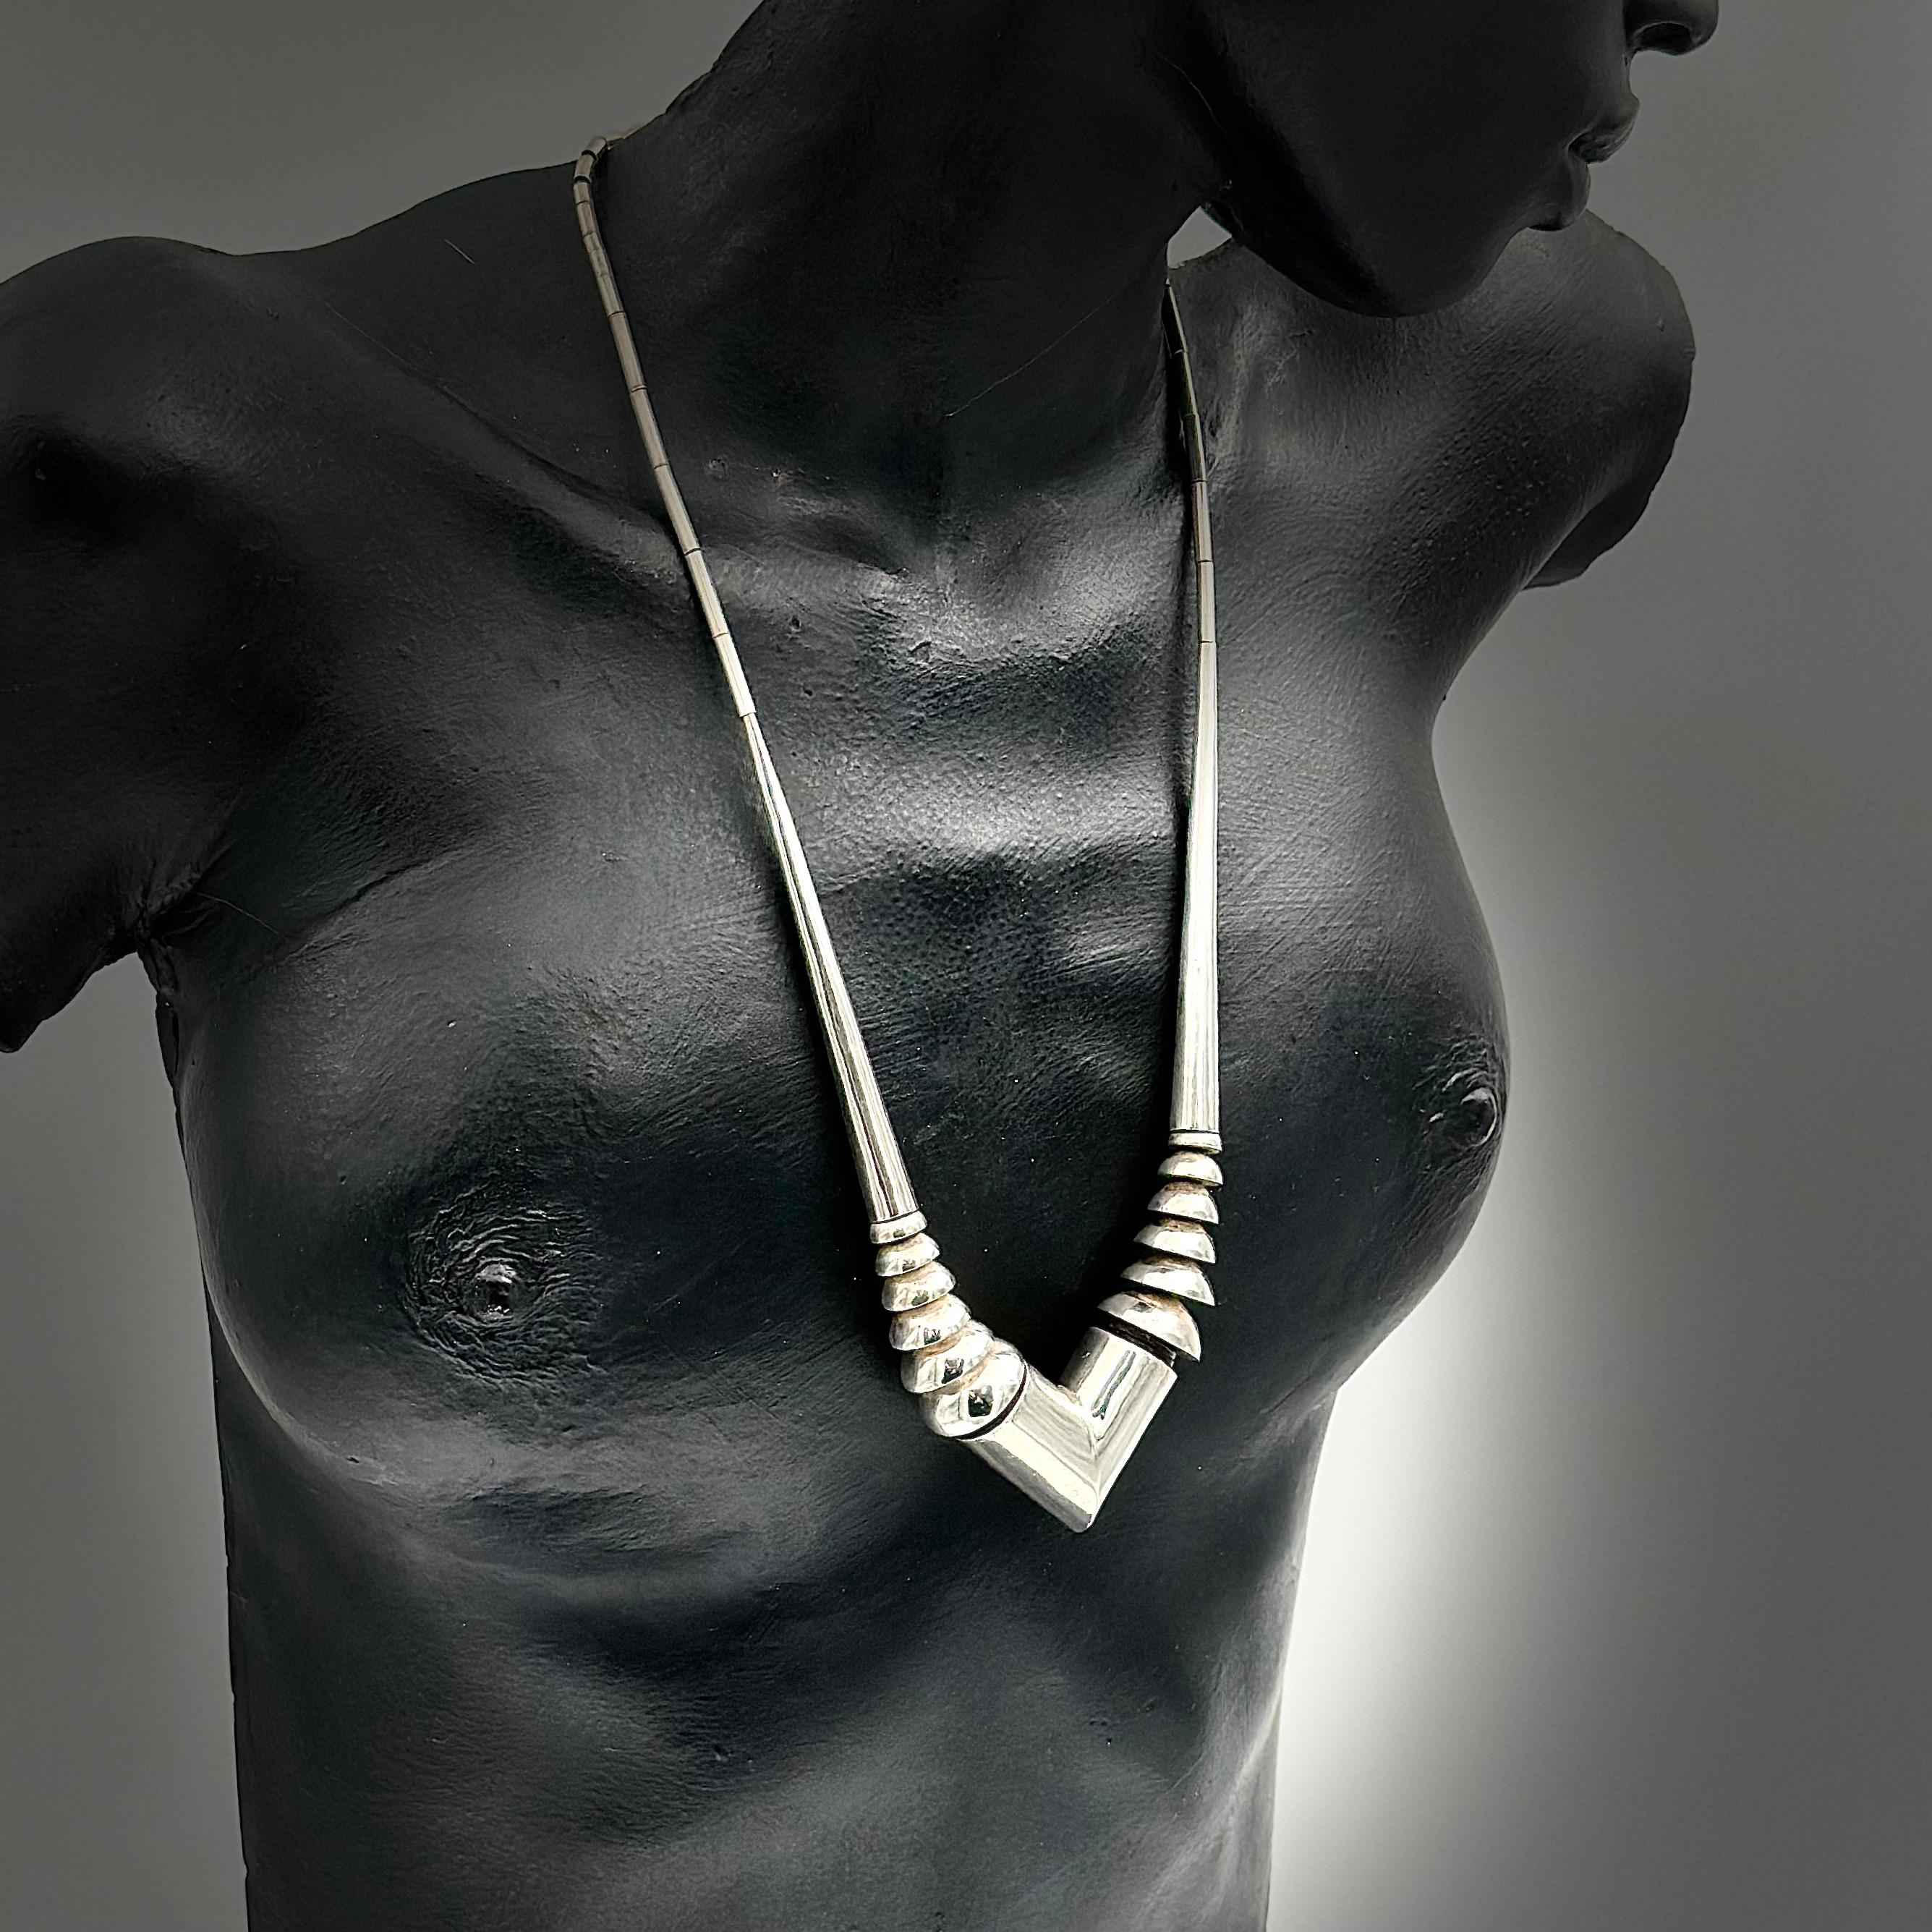 Diese einzigartige Halskette wurde in den späten 1970er Jahren entworfen und ist Teil der Nautilus-Serie, die Robert Lee Morris in SOHO NYC entworfen und handgefertigt hat. Die Nautilus-Serie besteht aus zwei länglichen, hohlen, konisch zulaufenden